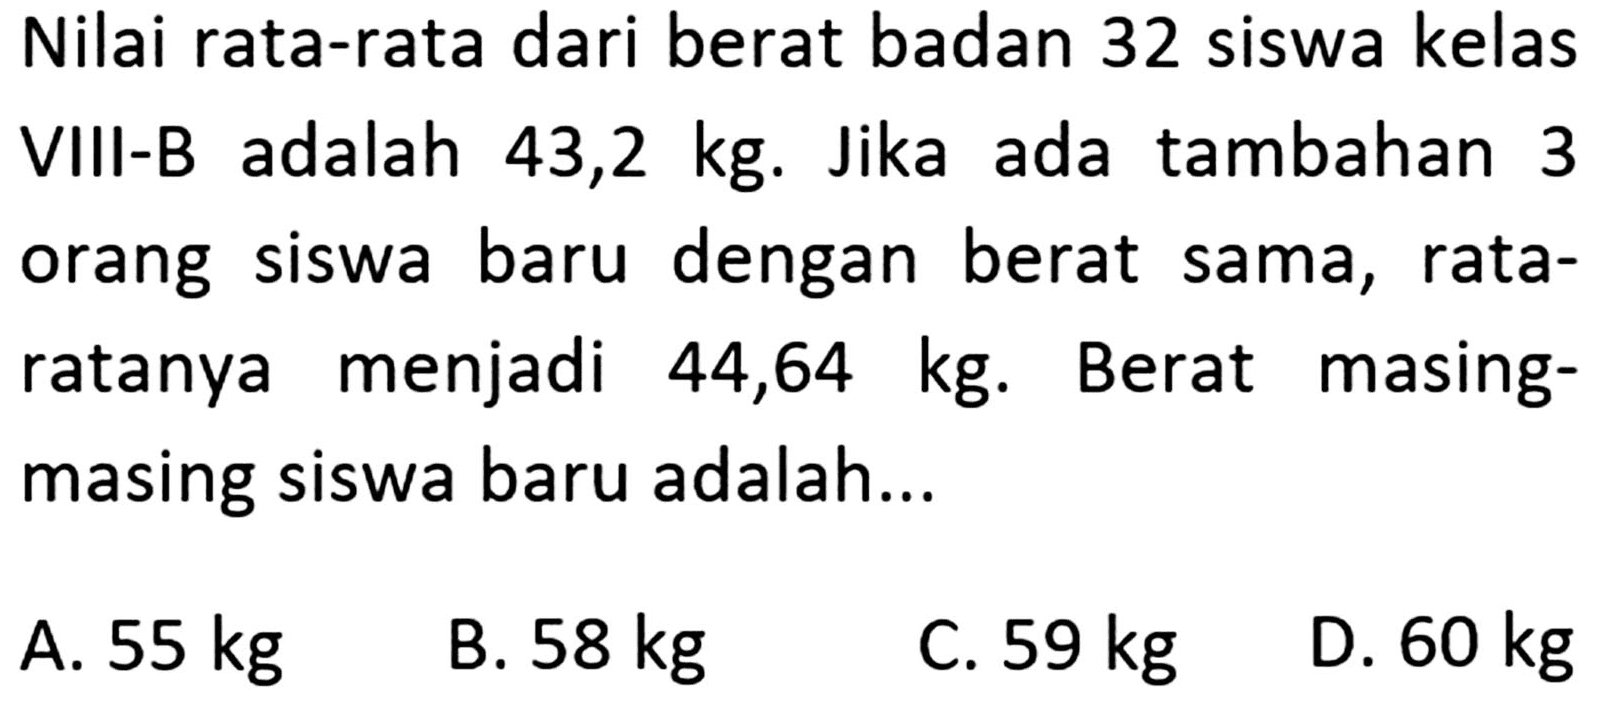 Nilai rata-rata dari berat badan 32 siswa kelas adalah VIII-B 43,2 kg. Jika ada tambahan 3 orang siswa baru dengan berat sama, rata- ratanya menjadi 44,64 kg. Berat masing siswa baru adalah...